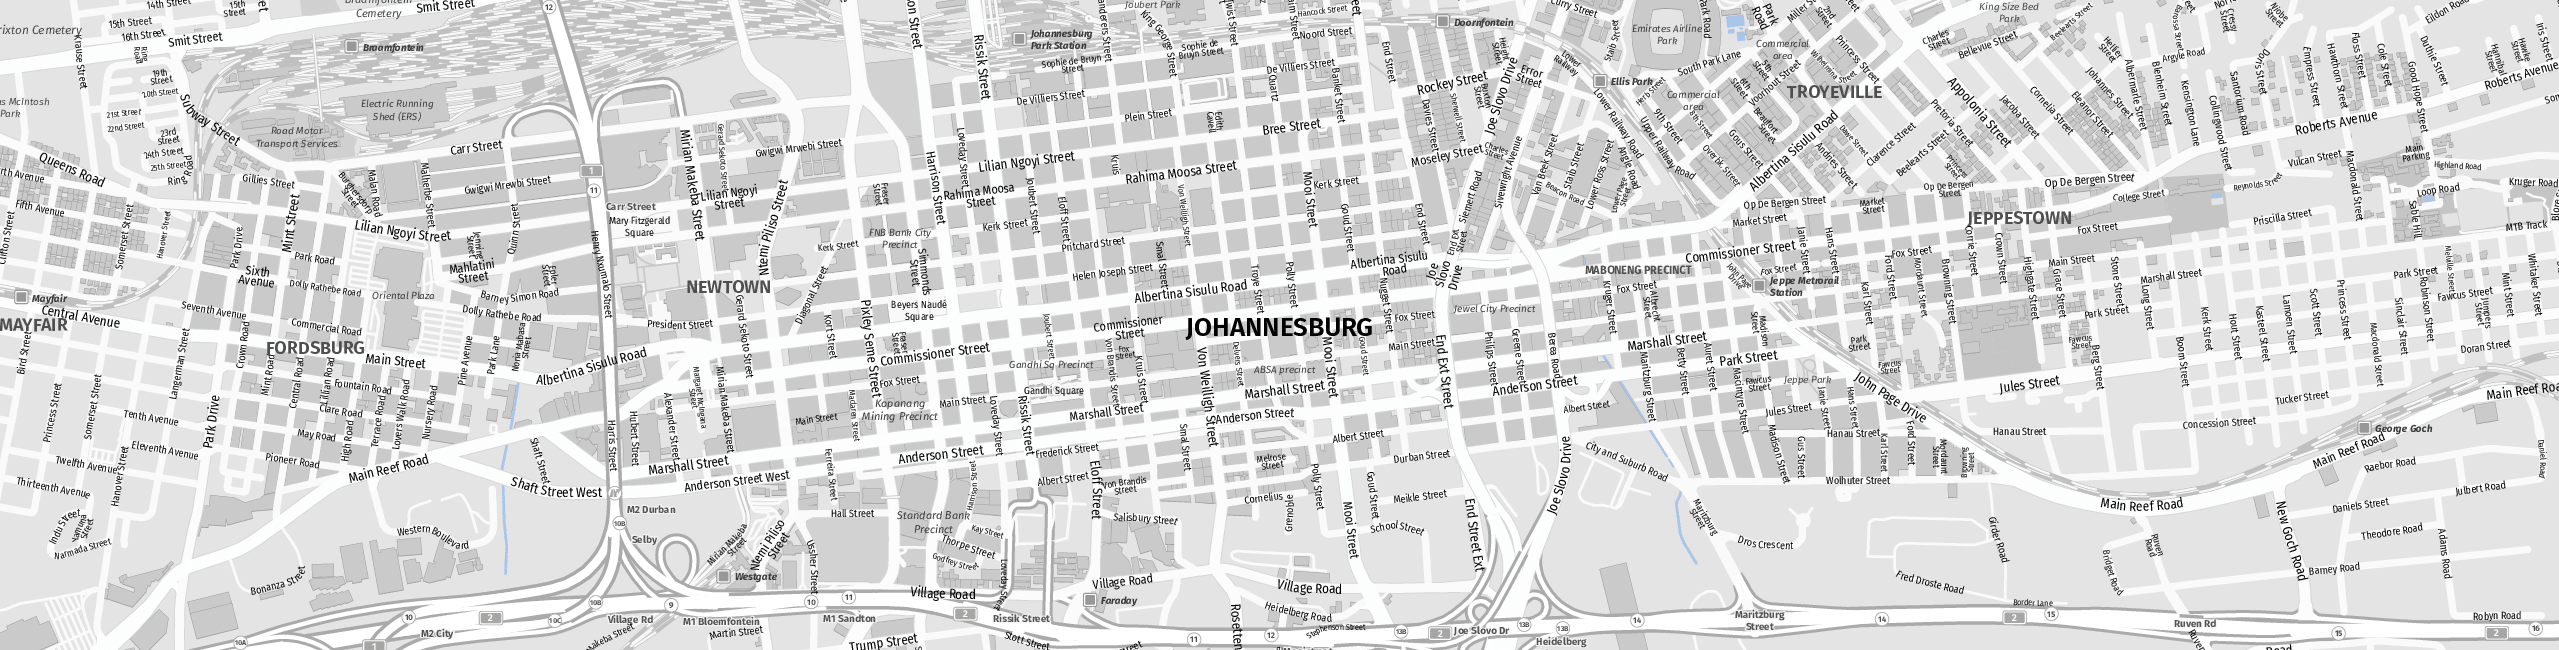 Stadtplan Johannesburg zum Downloaden.